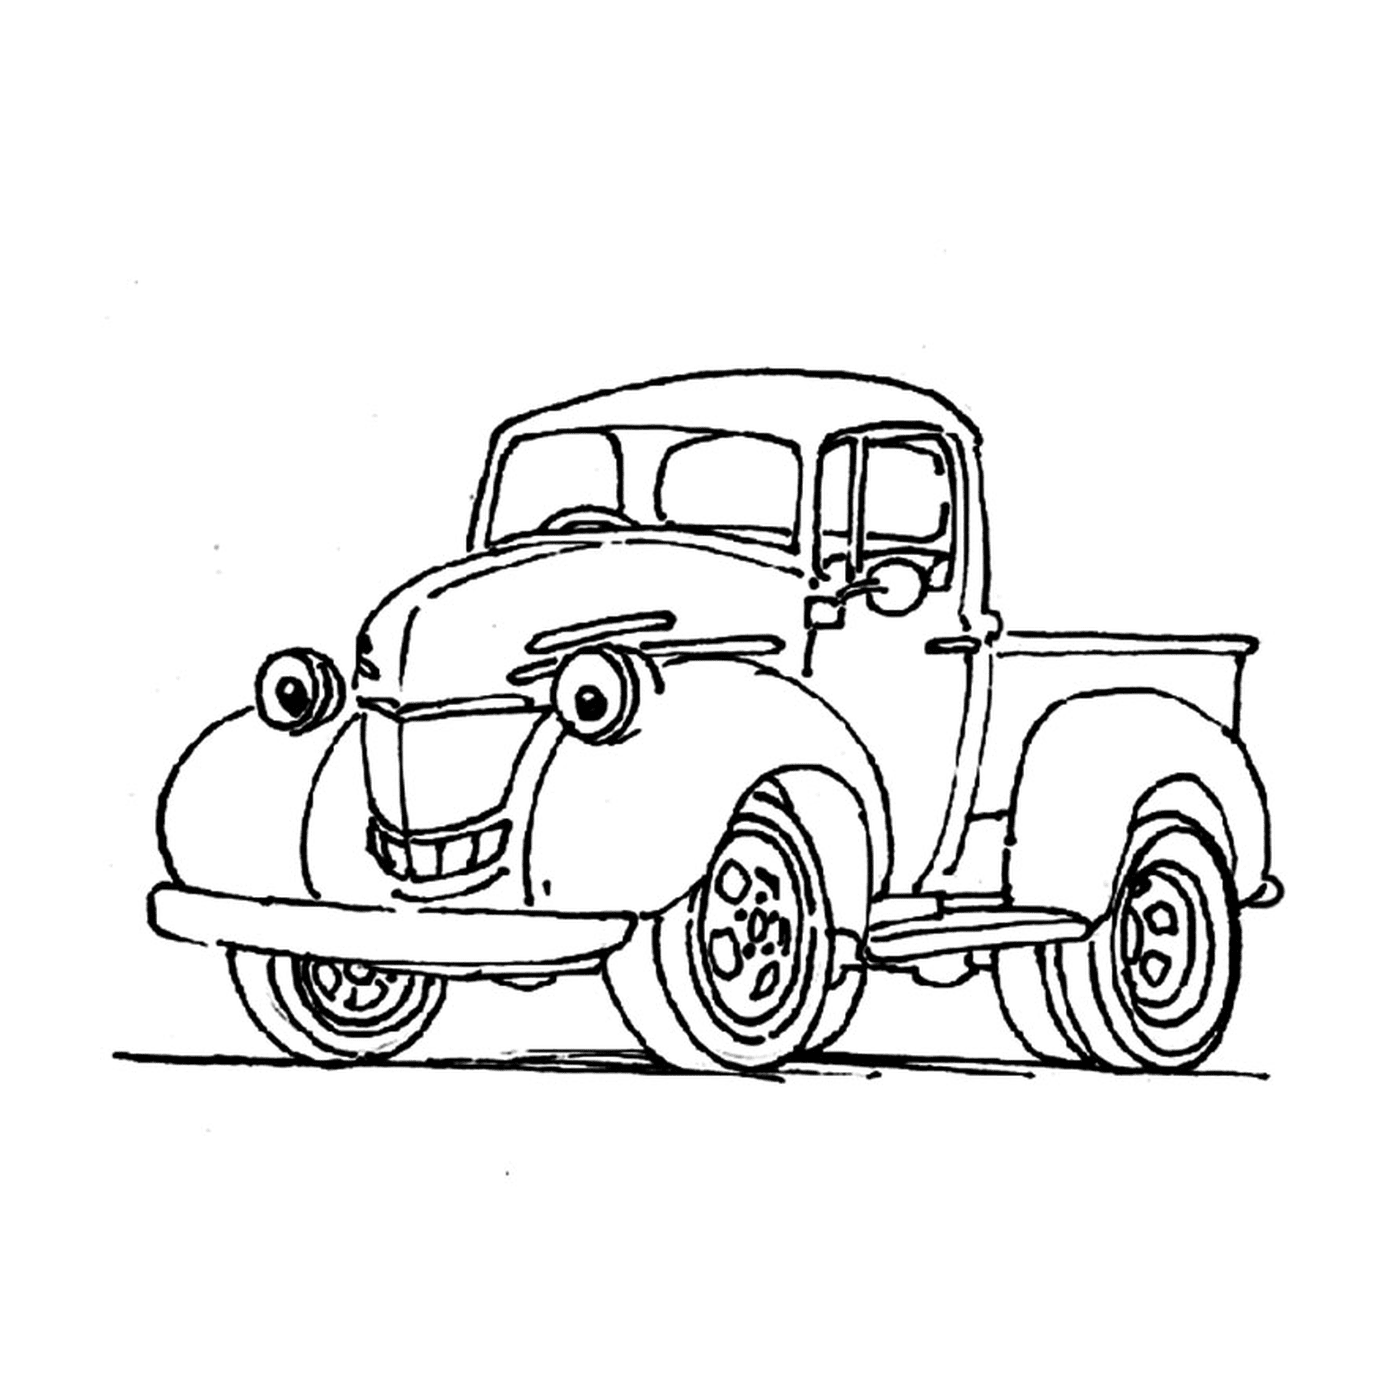  Camión viejo con una cara sonriente dibujada a un lado 